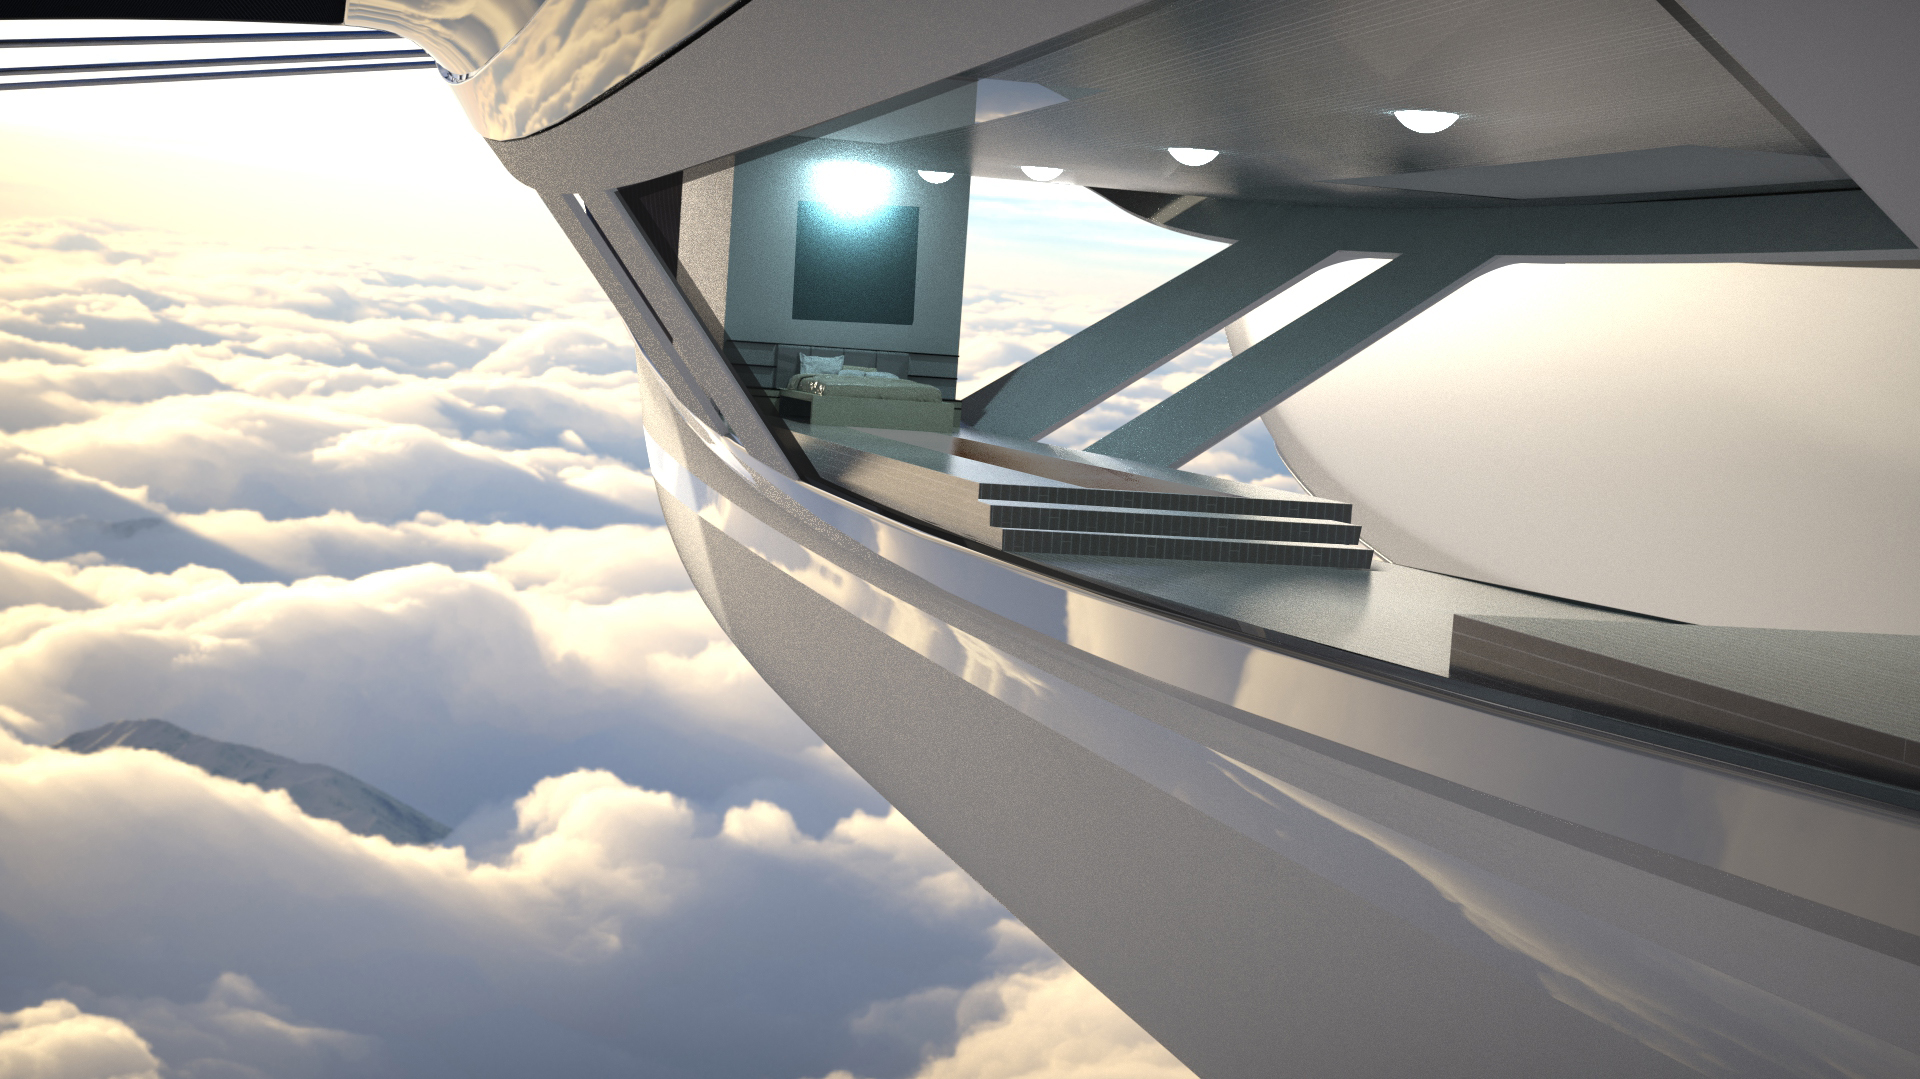 Il concept 'Sky Yacht' elaborato dallo studio Lazzarini Design per una mobilità aerea e acquatica sostenibile: la sezione centrale